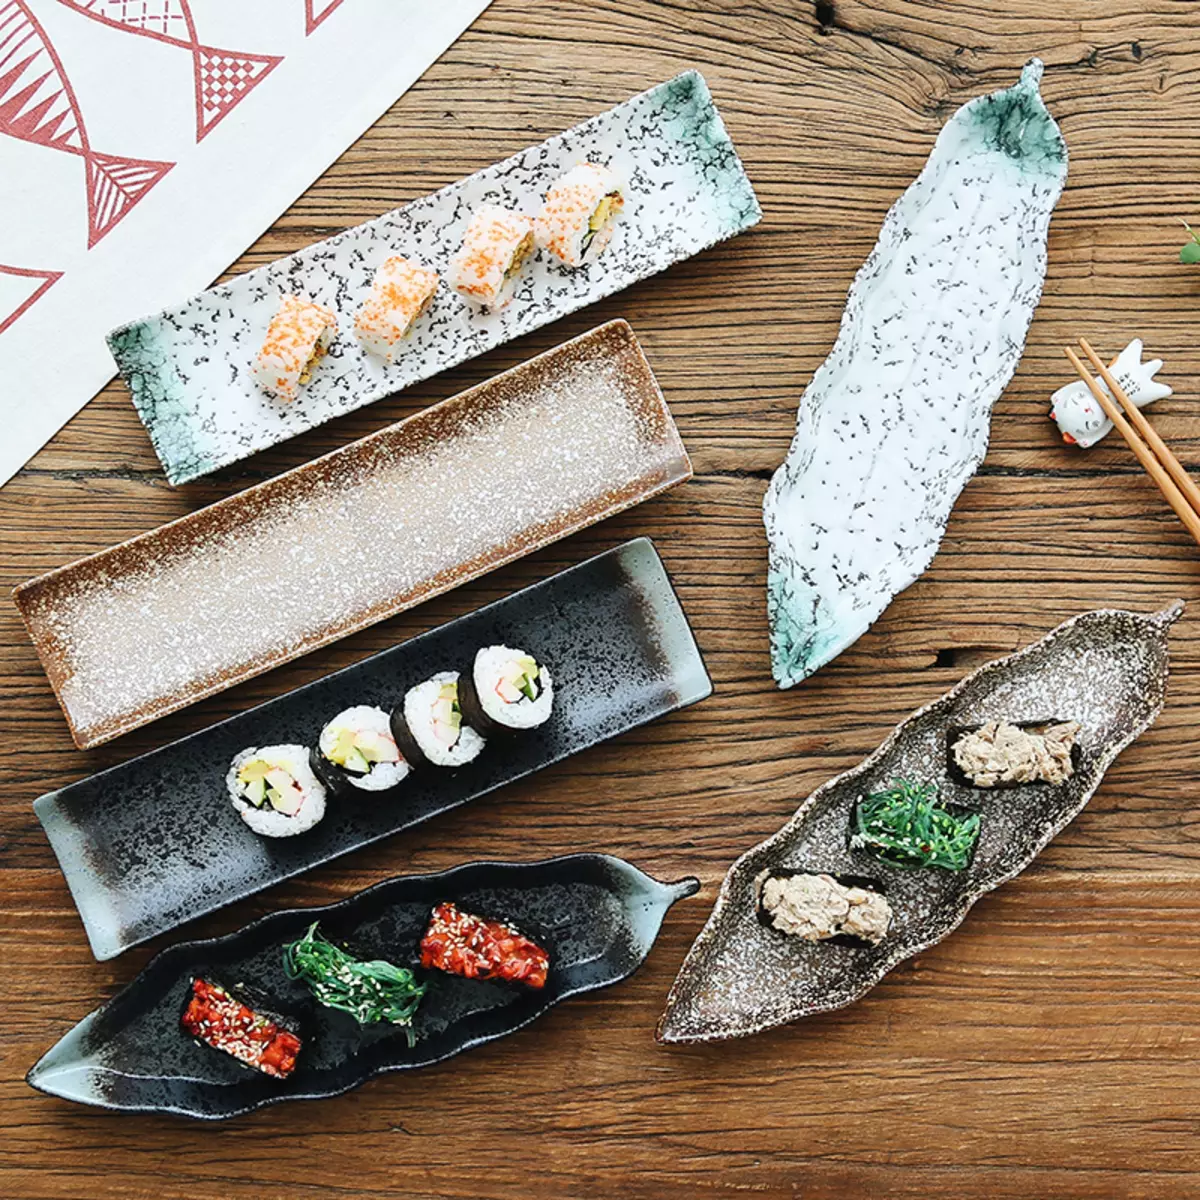 Επιτραπέζια σκεύη για σούσι: ένα σύνολο πλακών για ρολά, χαρακτηριστικά των ιαπωνικών πιάτων. Ποια αντικείμενα χρειάζονται για τη σίτιση για 4 άτομα; 10827_5